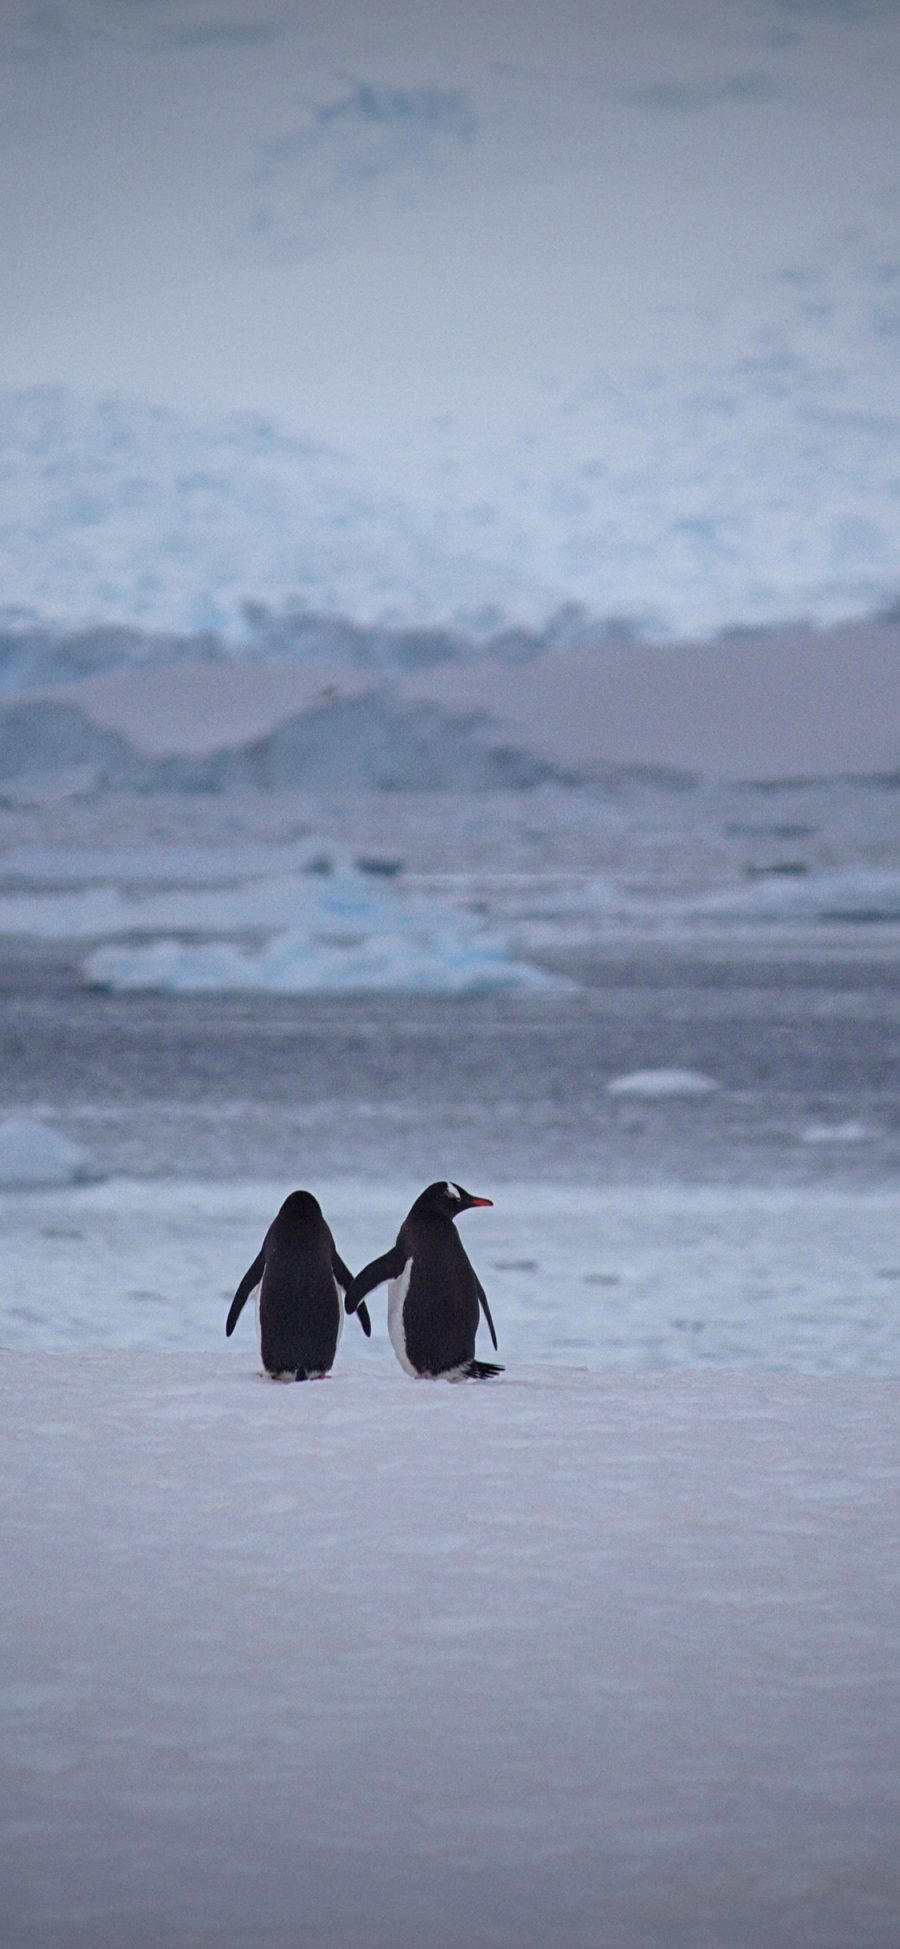 [2436×1125]企鹅 动物 南极 冰川 背影 苹果手机壁纸图片